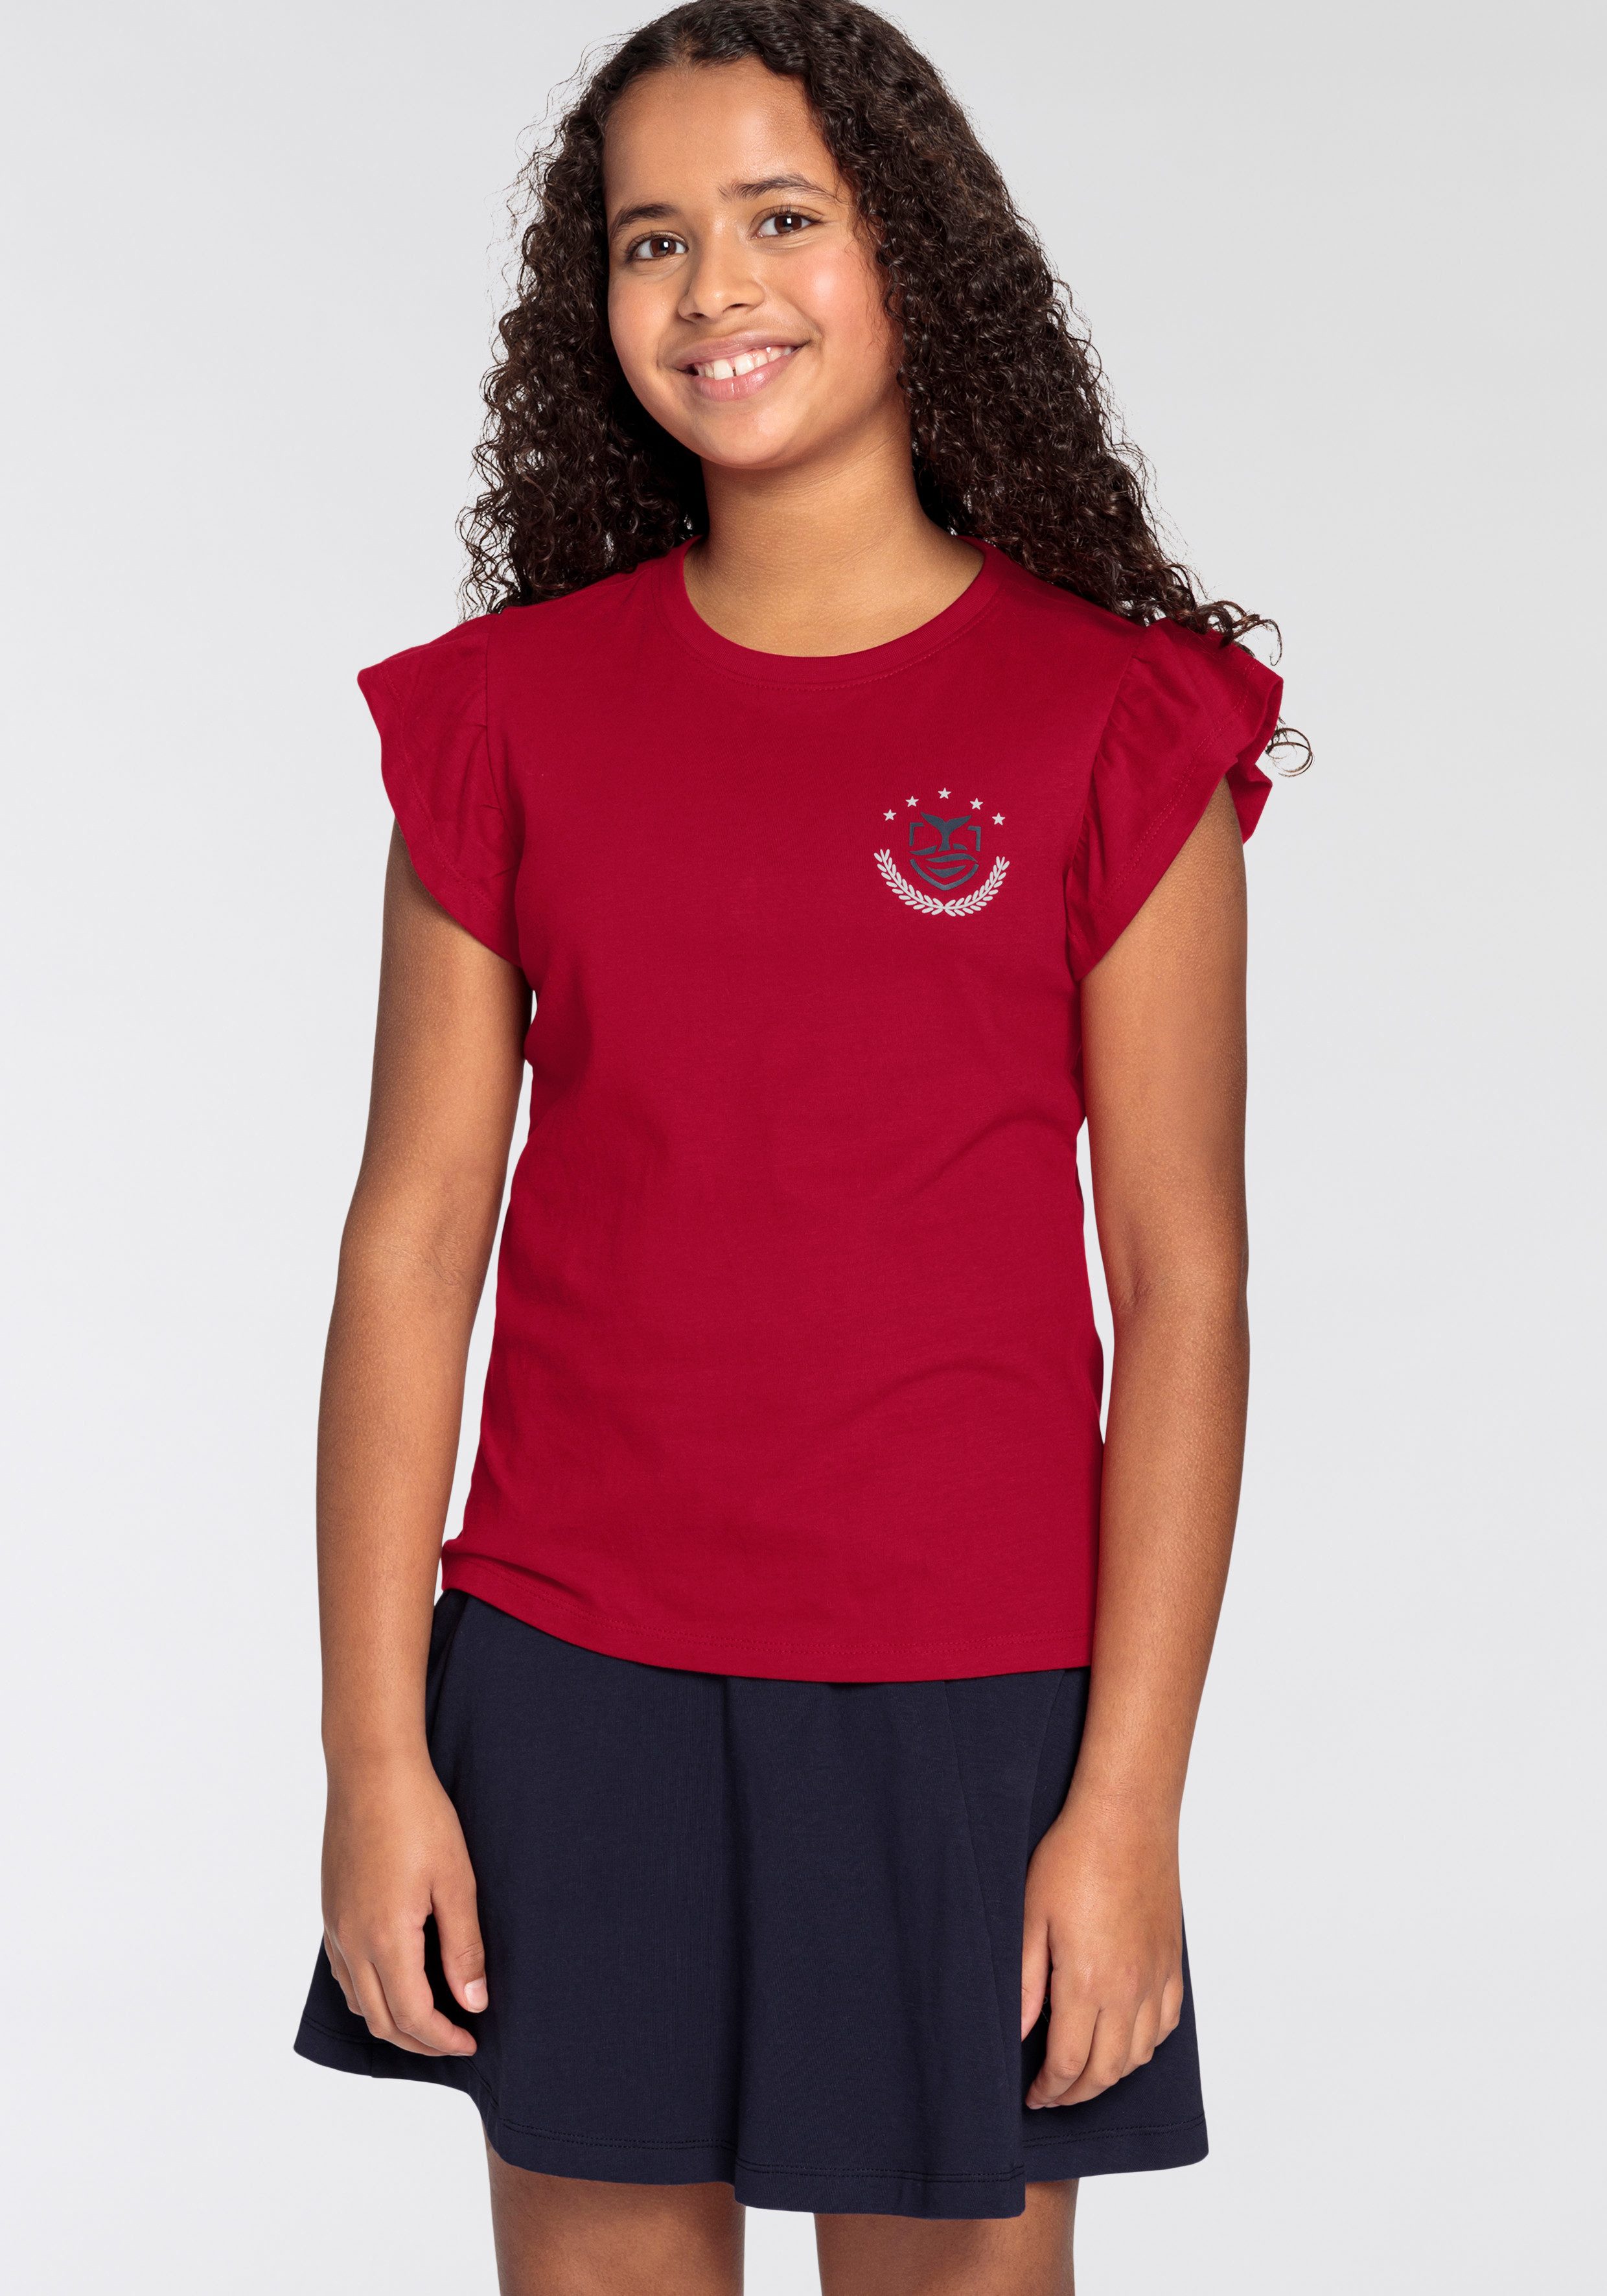 DELMAO T-Shirt für Mädchen mit Rüschen